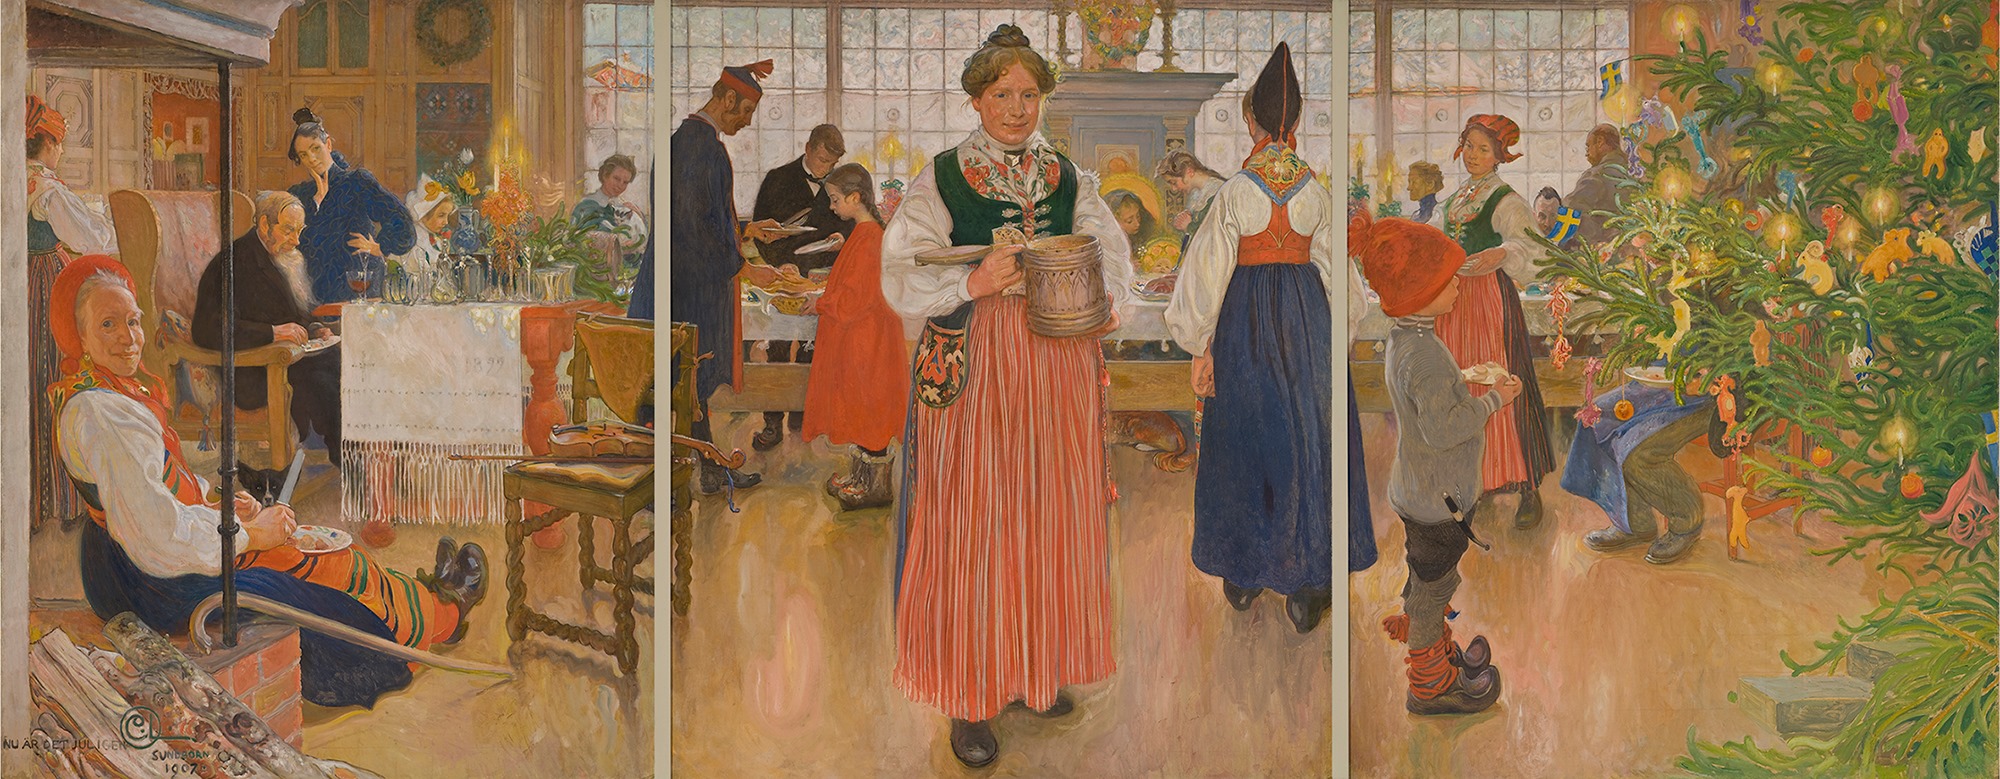 圣诞节又到啦！ by 卡尔 拉尔森 - 1907 - 180 × 456 cm 赫尔辛堡博物馆